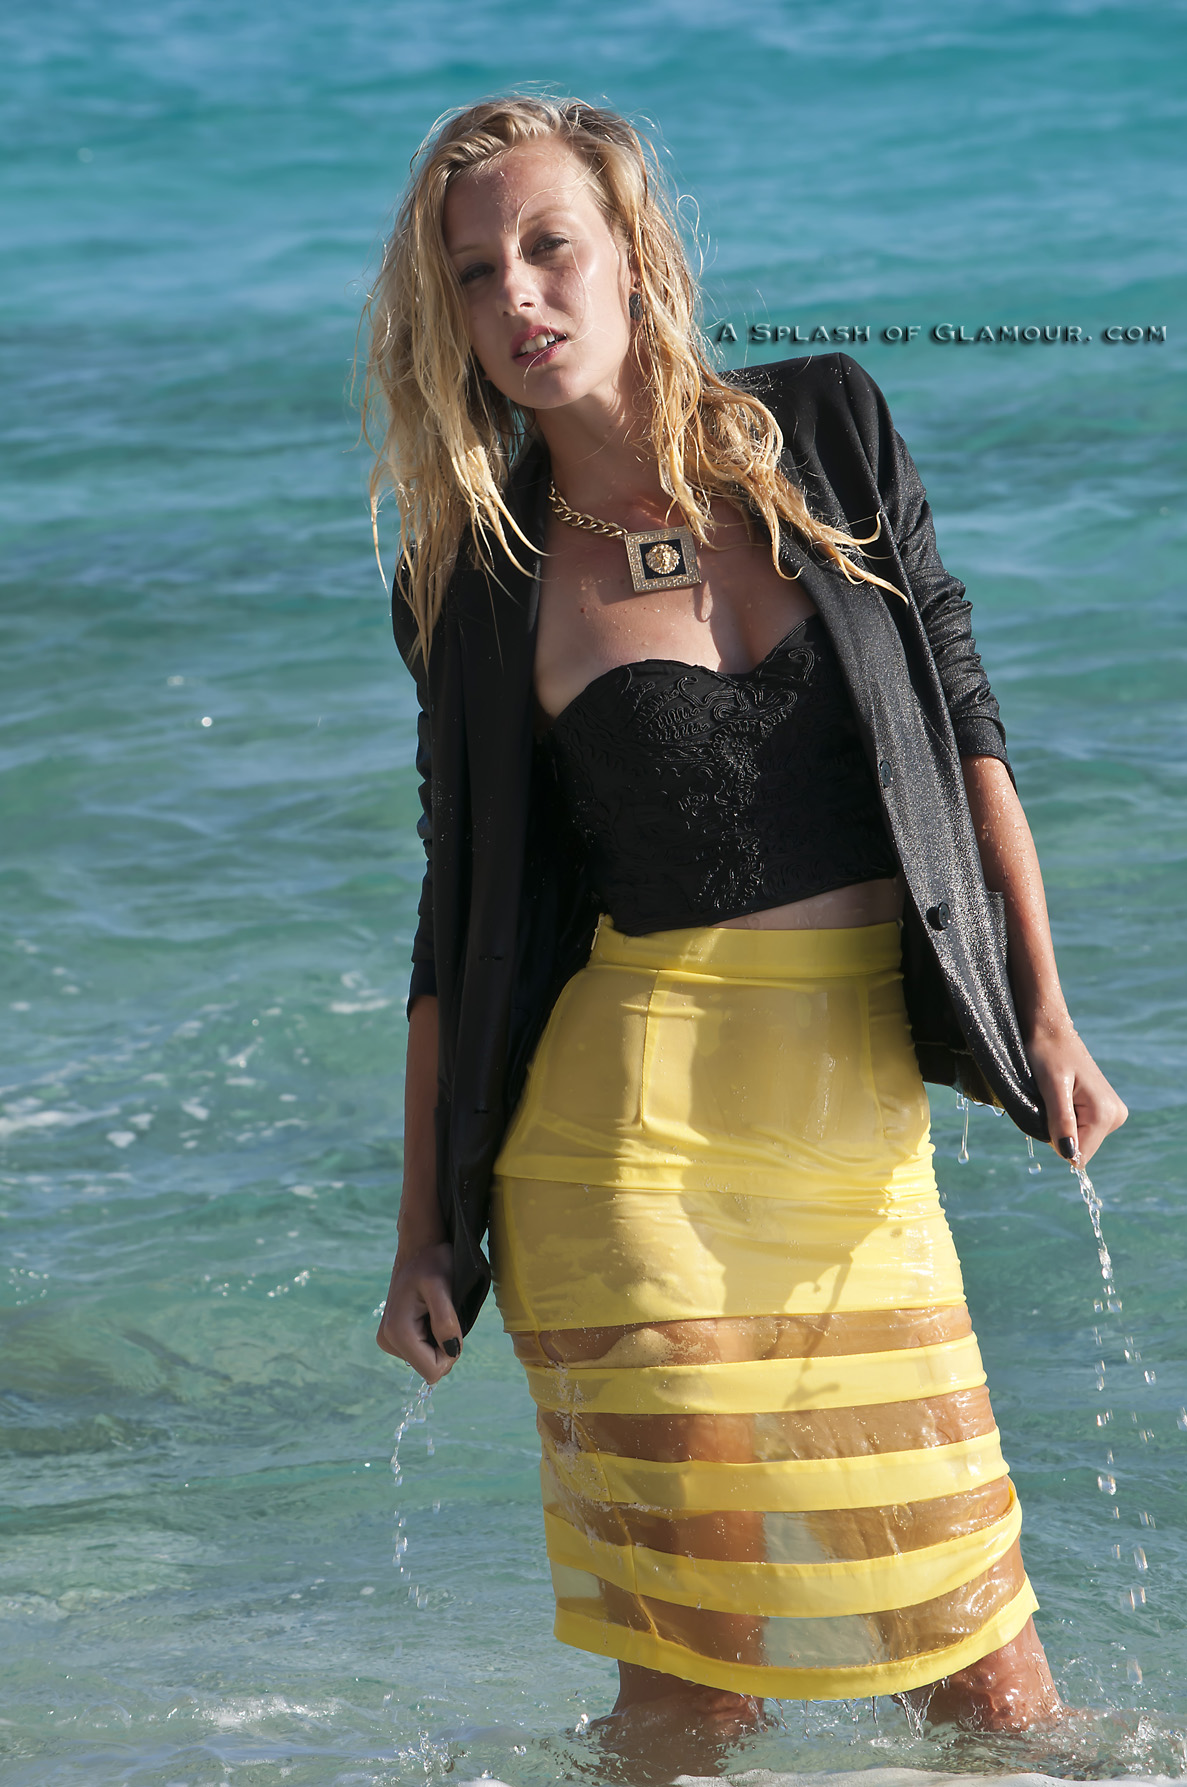 Emily yellow skirt at beach - SOG702